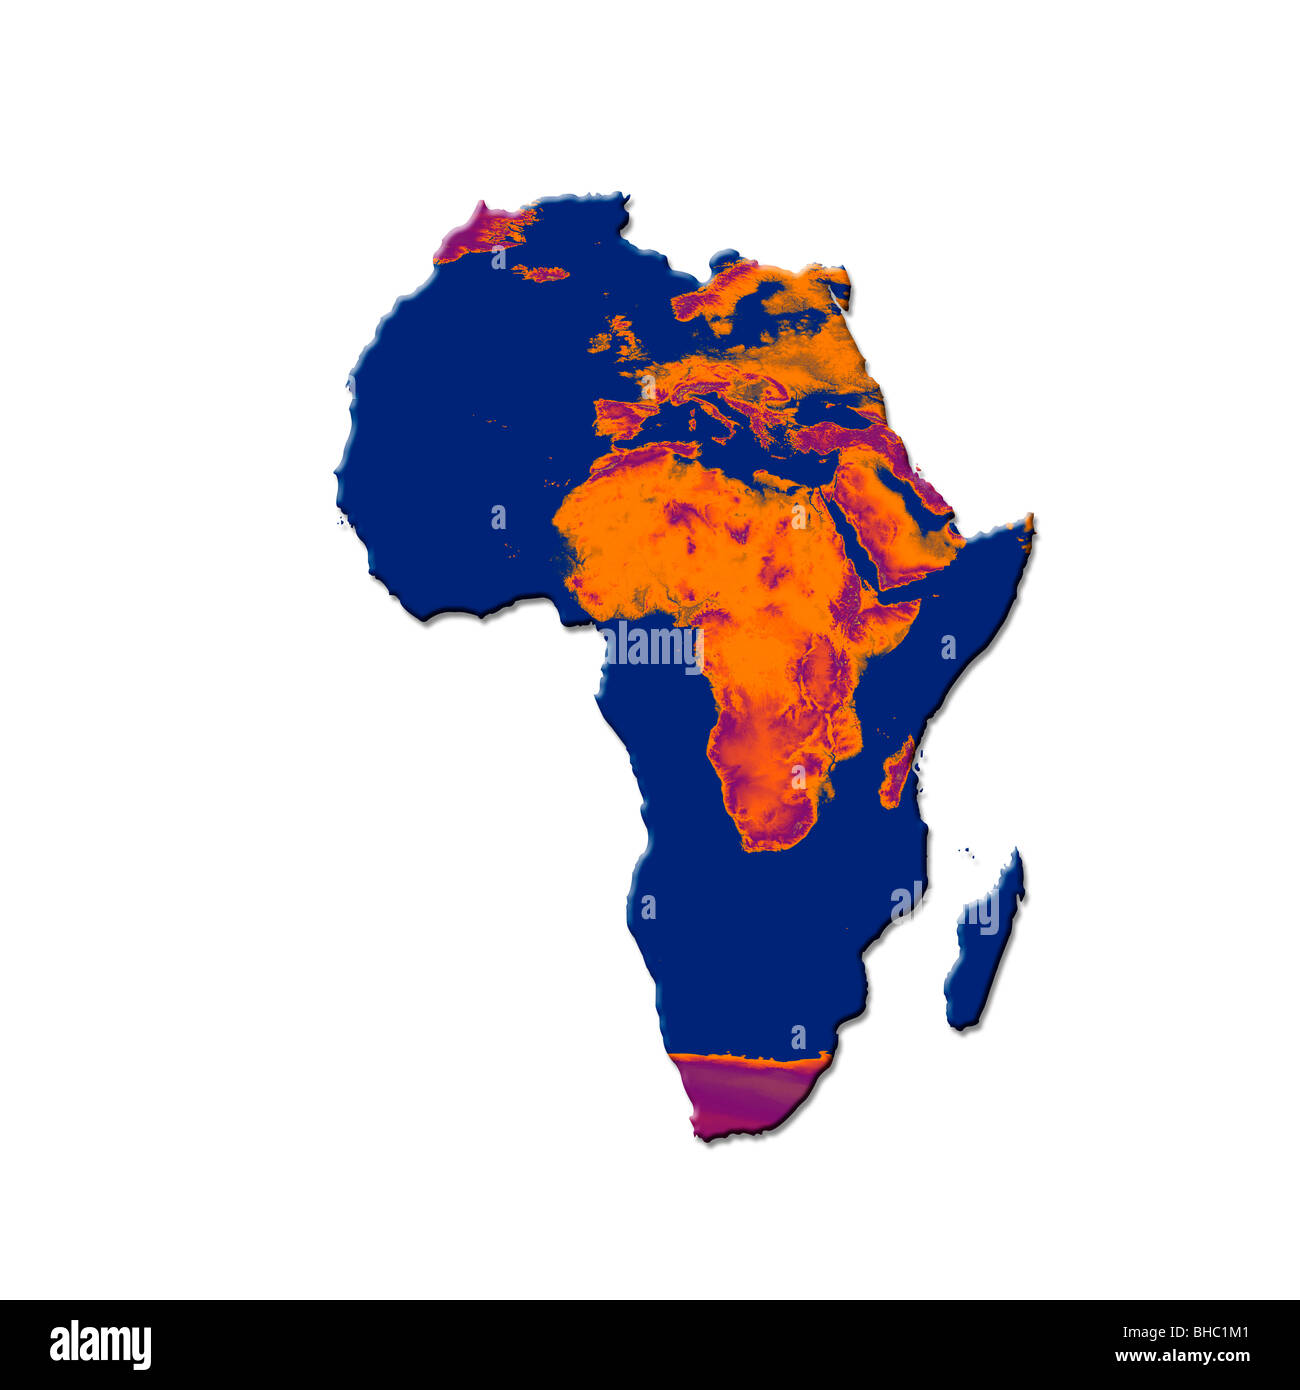 Karte von Afrika mit einem verbrannten Bild von Afrika und Europa überlagert. Konzeptbild vertreten, globale Erwärmung und Wüstenbildung Stockfoto